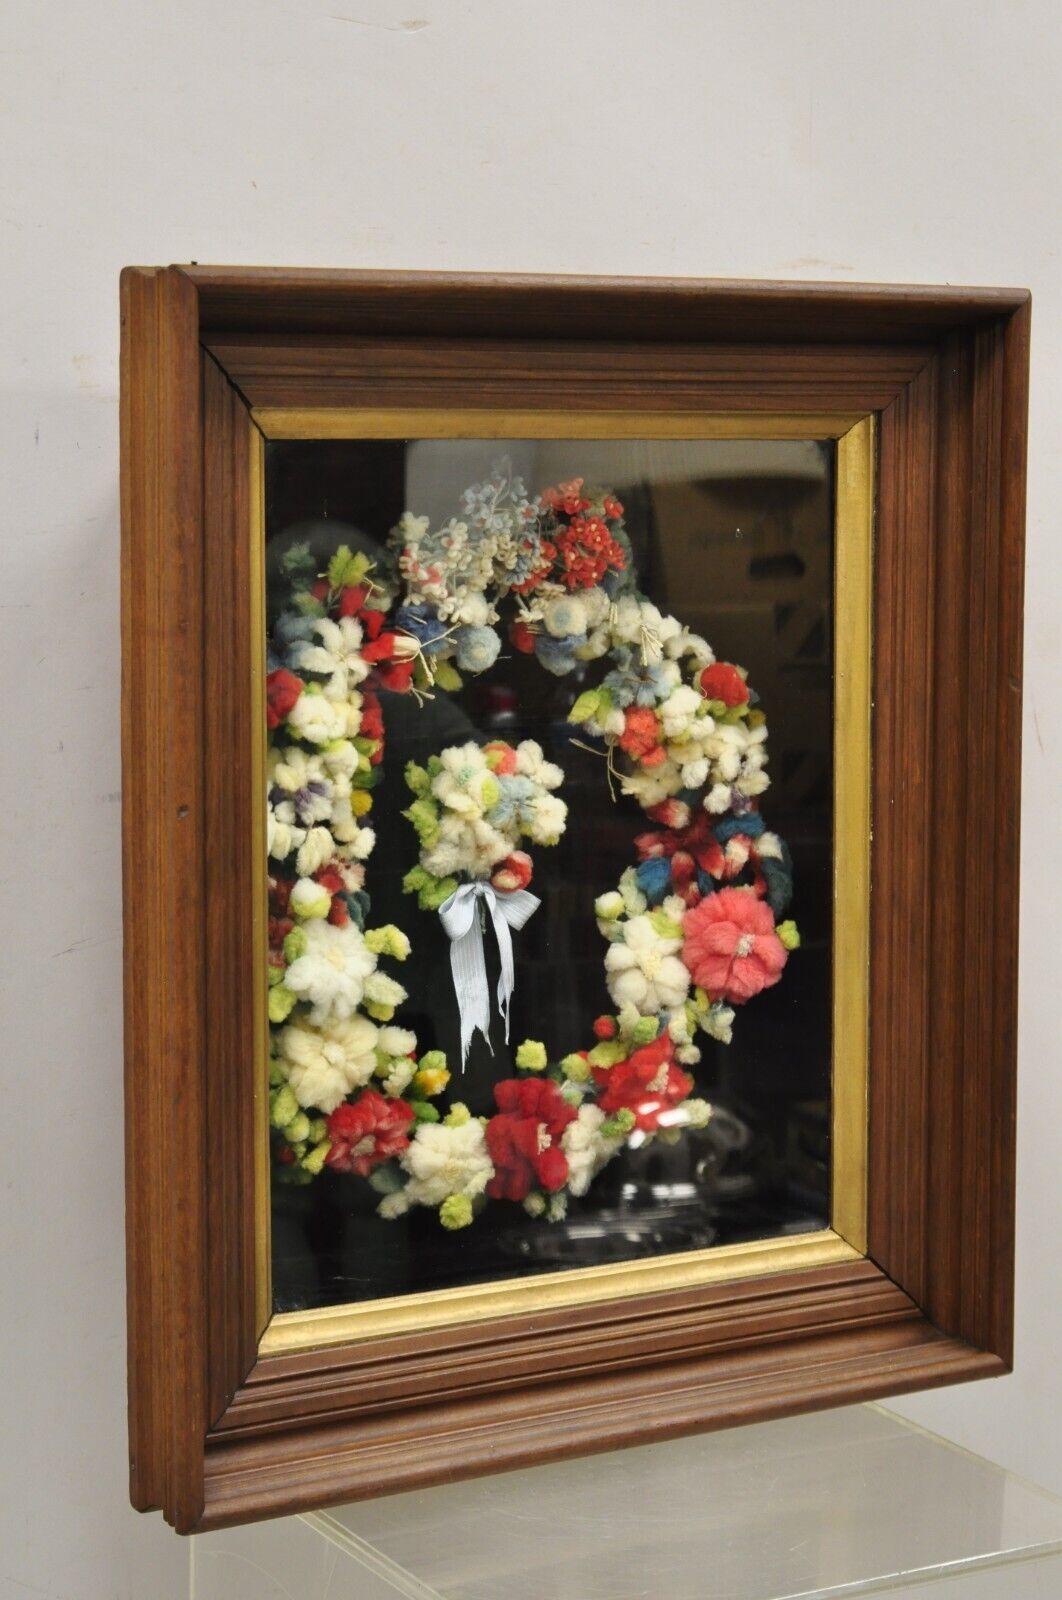 Vintage Mahagoni Deep Shadow Box Frame Felt Cotton Mourning Wreath Wall Art. Artikel verfügt über einen schönen tiefen Rahmen, Baumwollfilz handgefertigten Kranz, Massivholzrahmen, schöne Holzmaserung, sehr schöne antike Element. Um 1900.